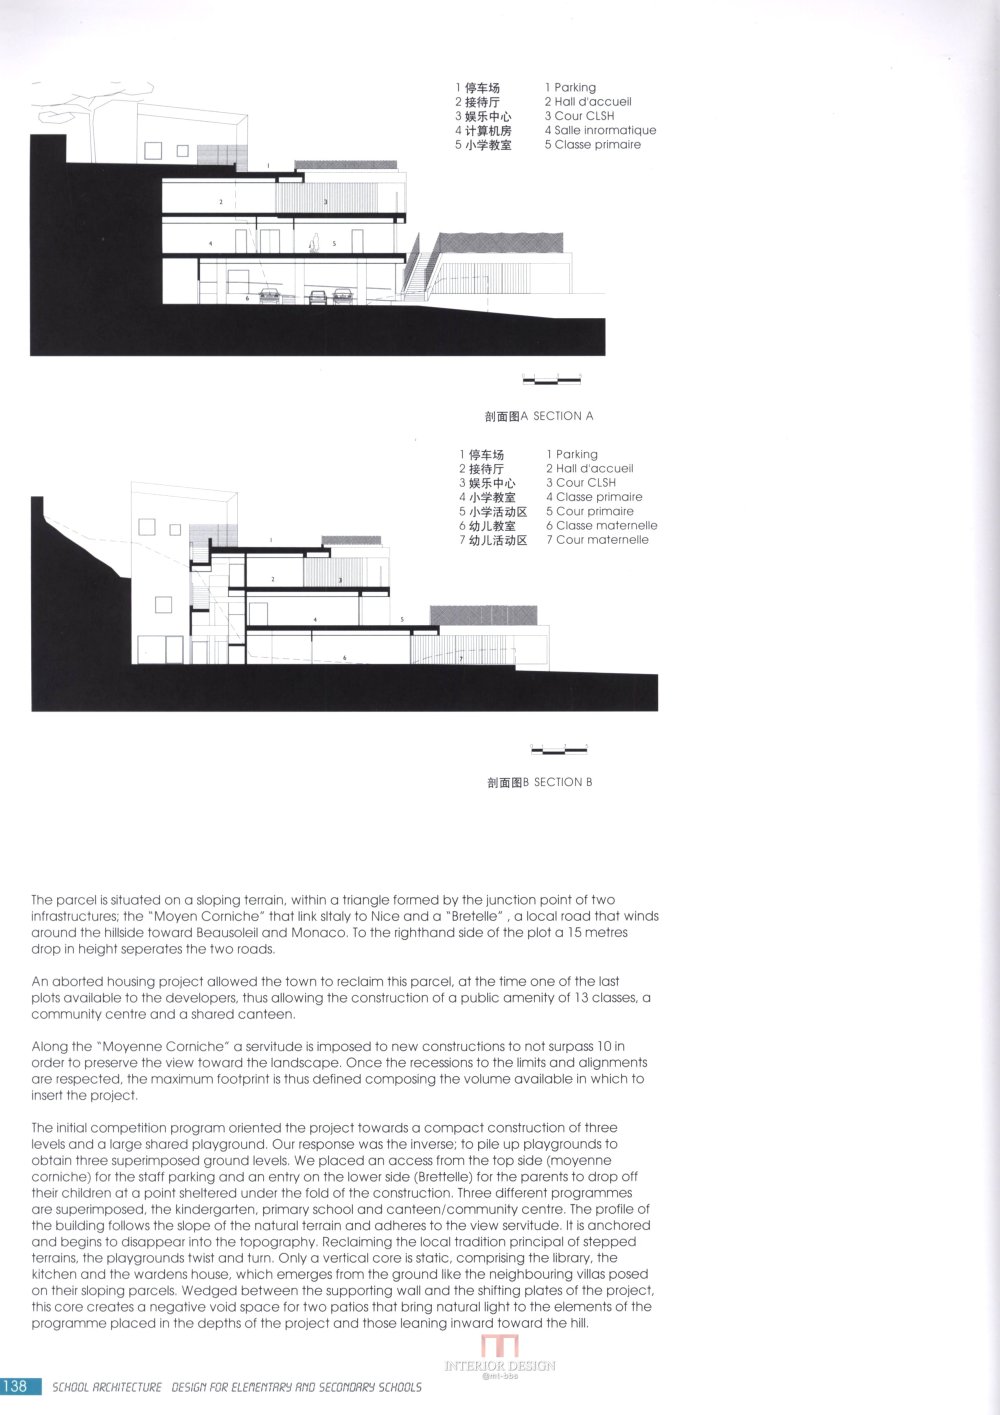 【筑意空间】成长空间 世界当代中小学建筑设计（部分收..._筑意空间 (132).jpg